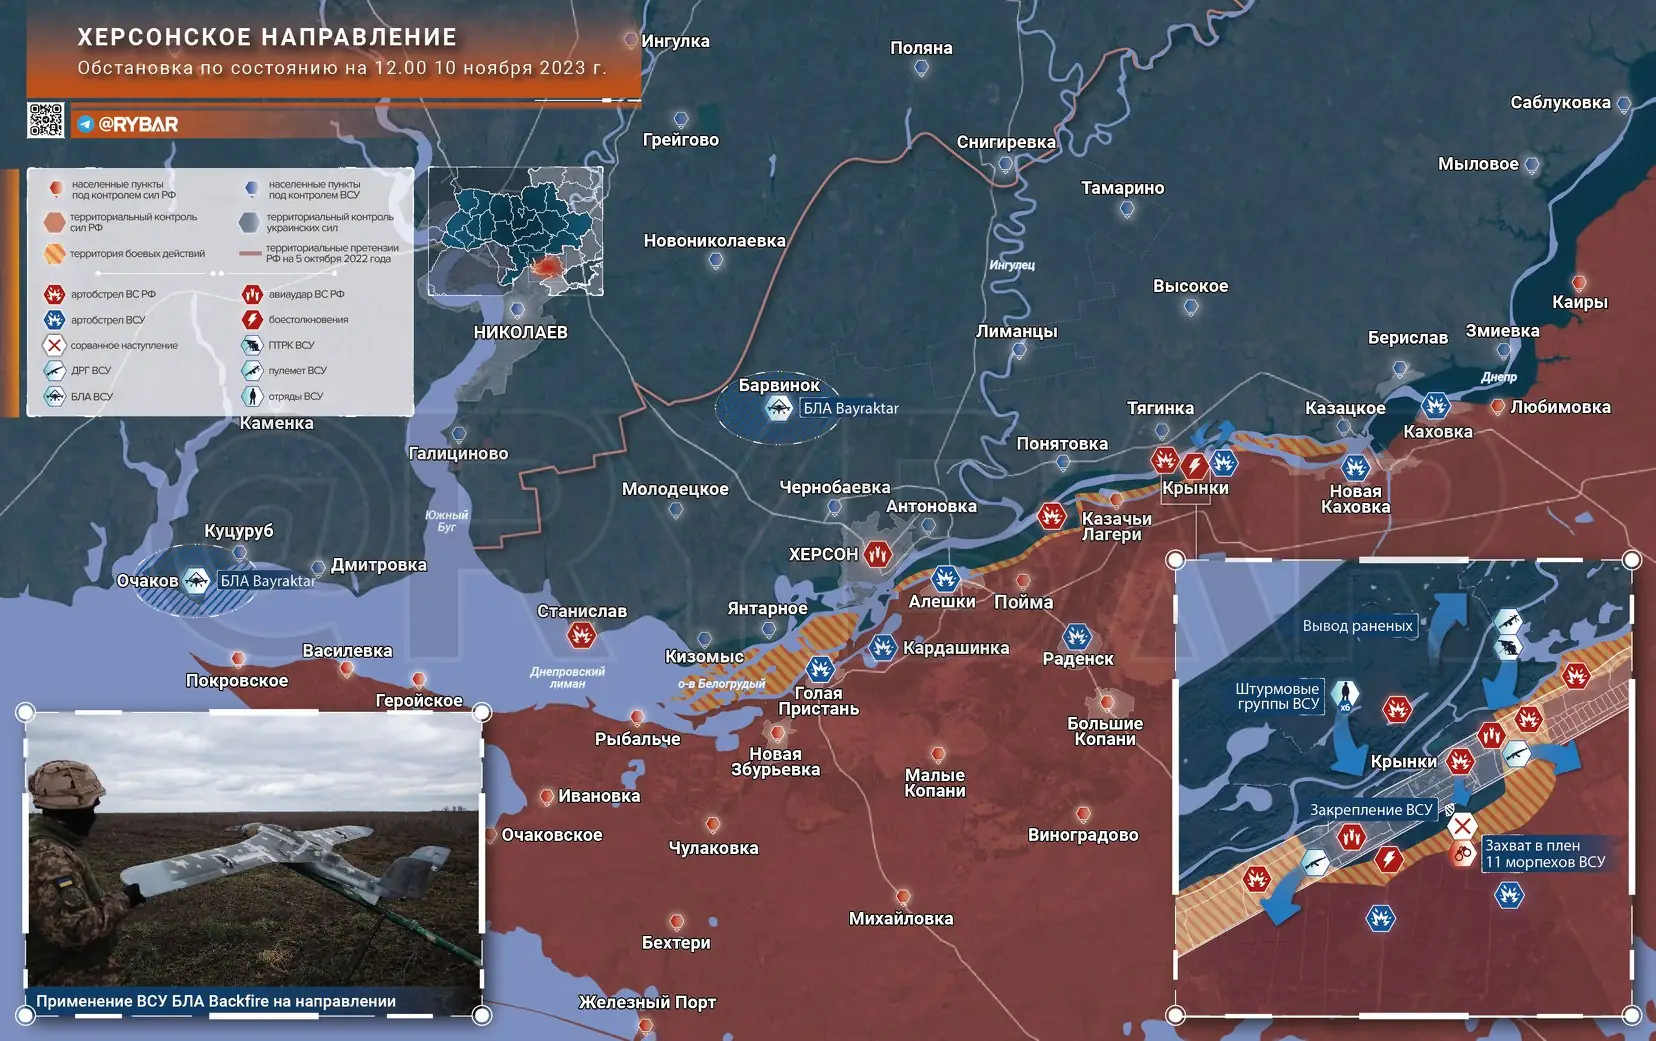 Херсонское направление: закрепление ВСУ в посадках у Крынок